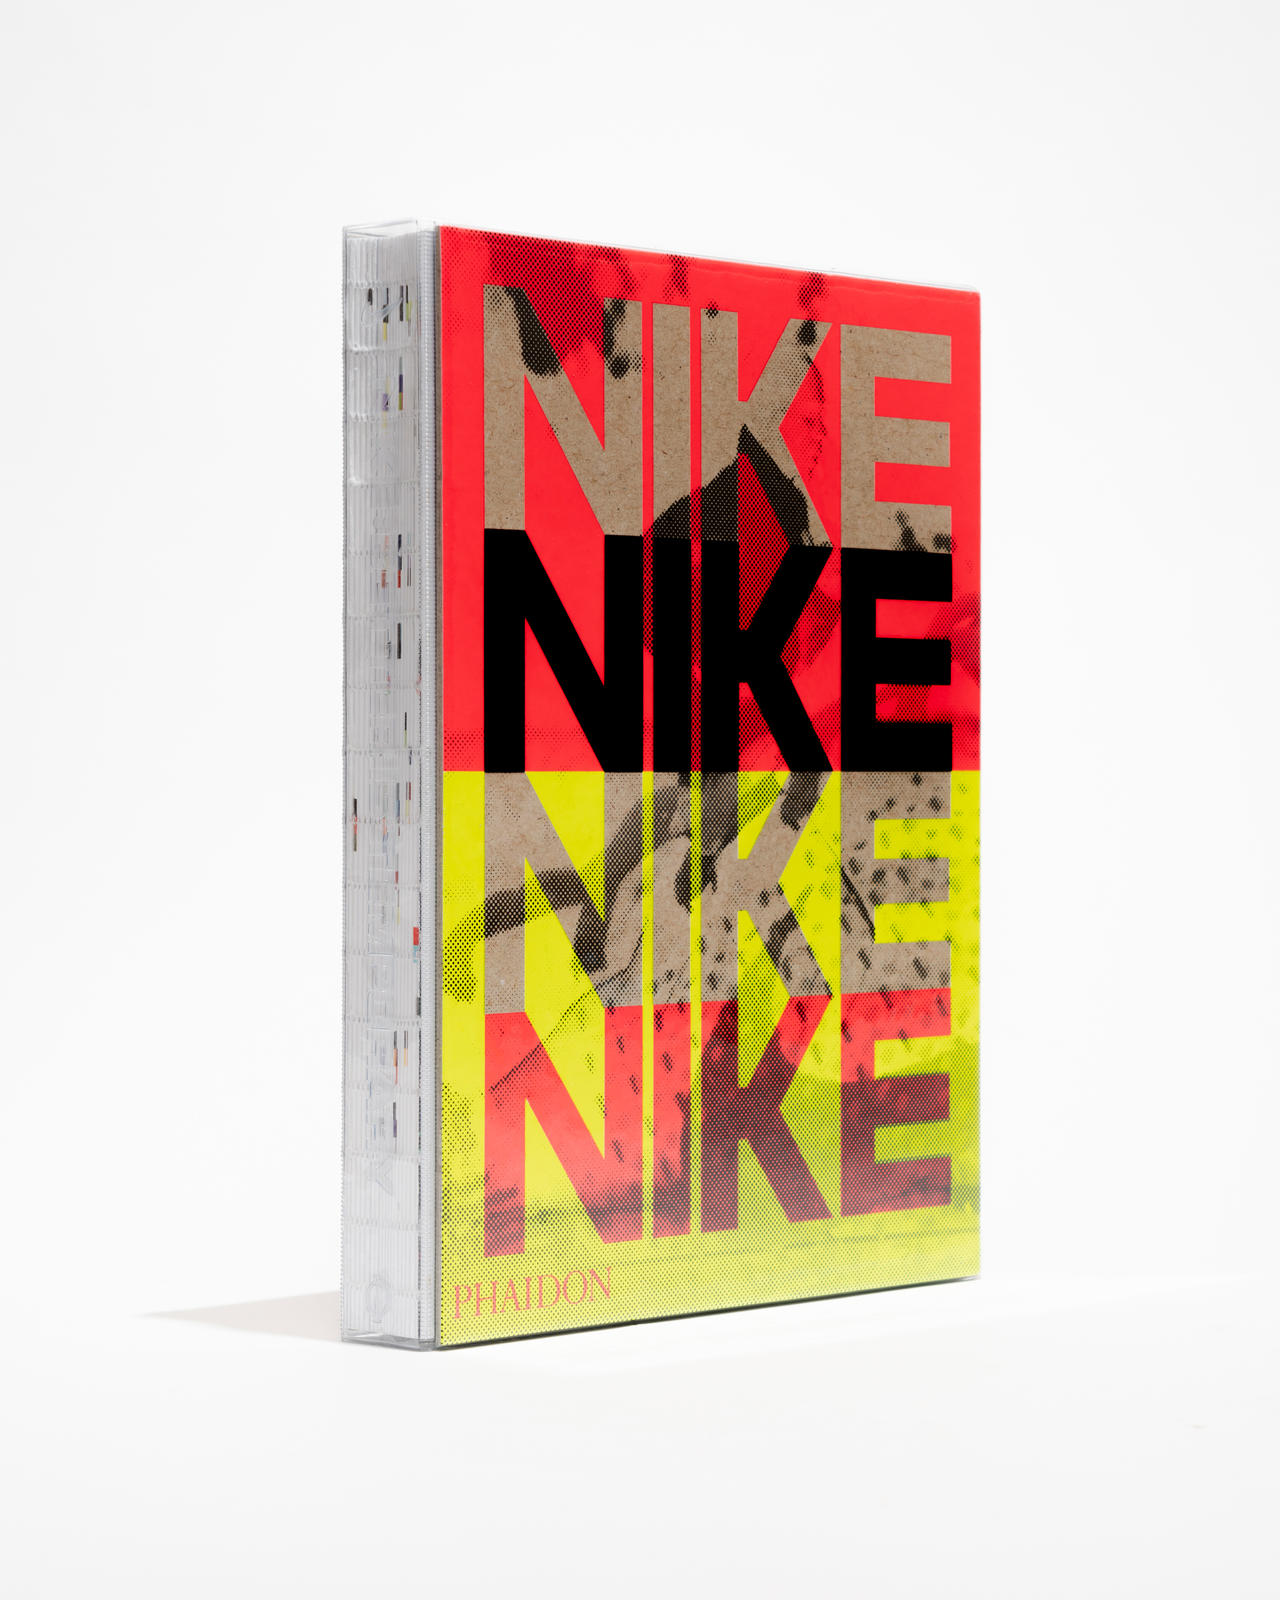 O livro abre com uma seção introdutória sobre Breaking2 e, em seguida, apresenta em cinco capítulos temáticos o foco da Nike em desempenho, expressão de marca, colaboração, design inclusivo e sustentabilidade.